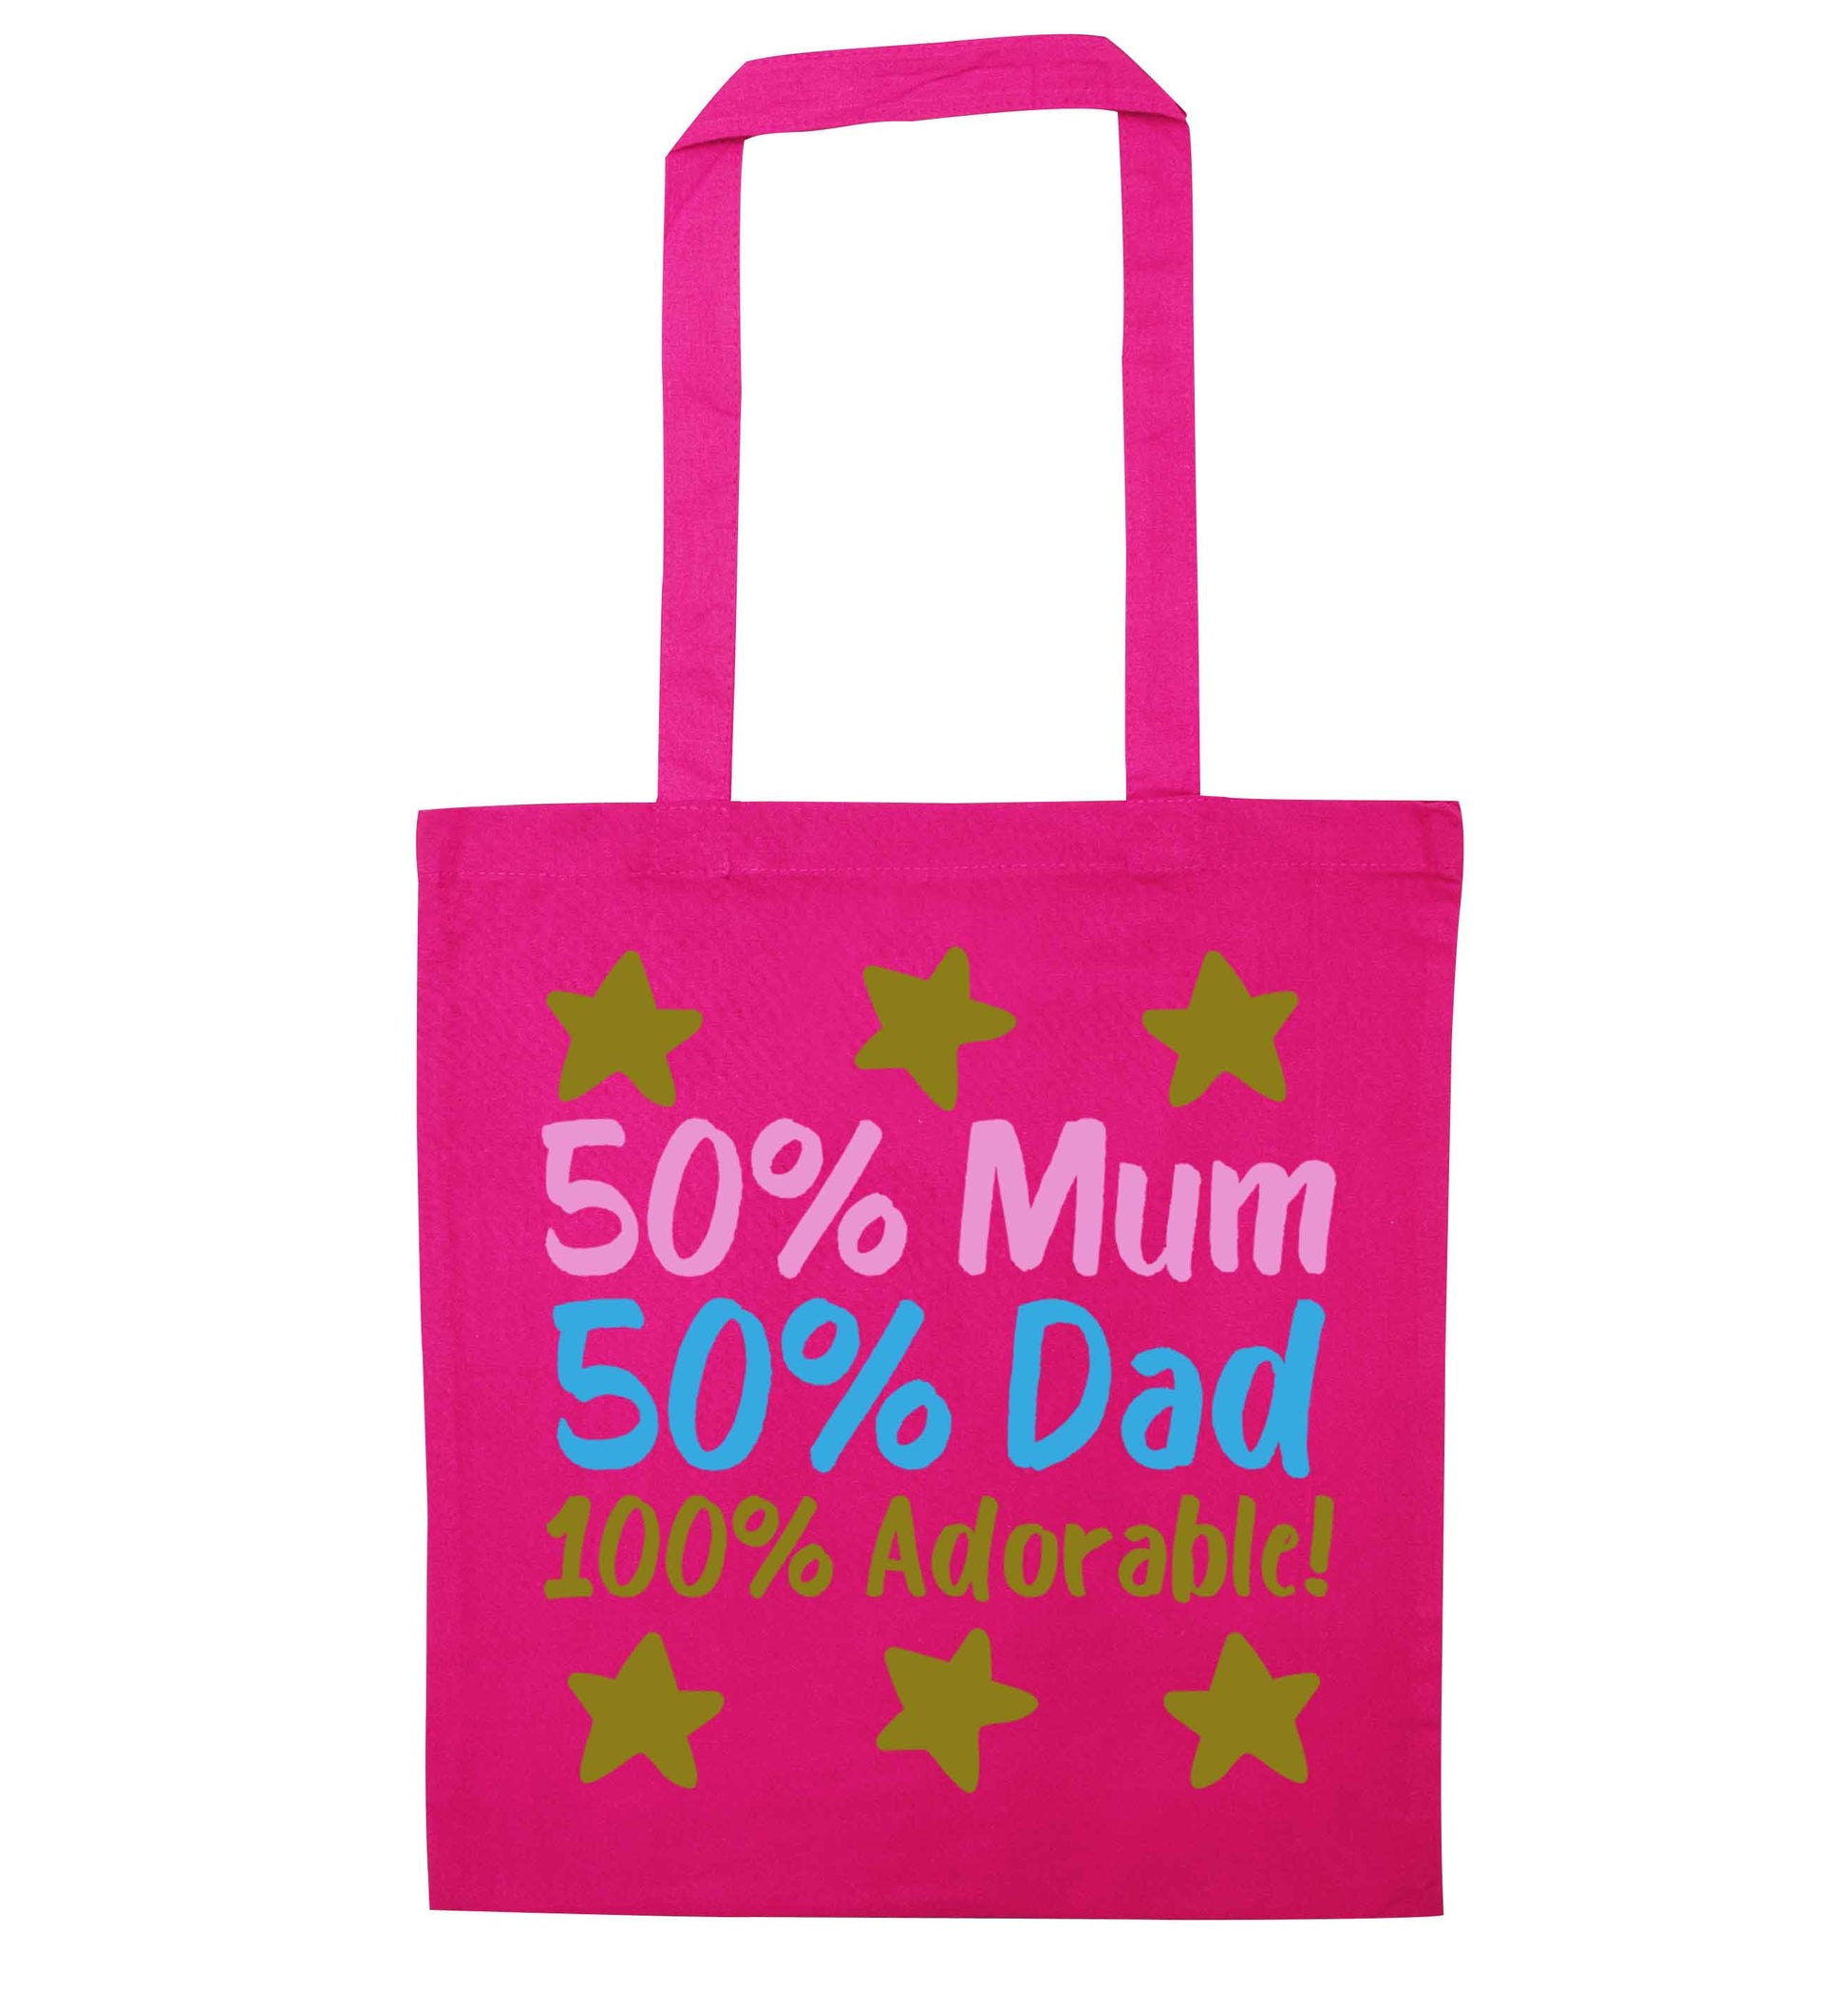 50% mum 50% dad 100% adorable pink tote bag